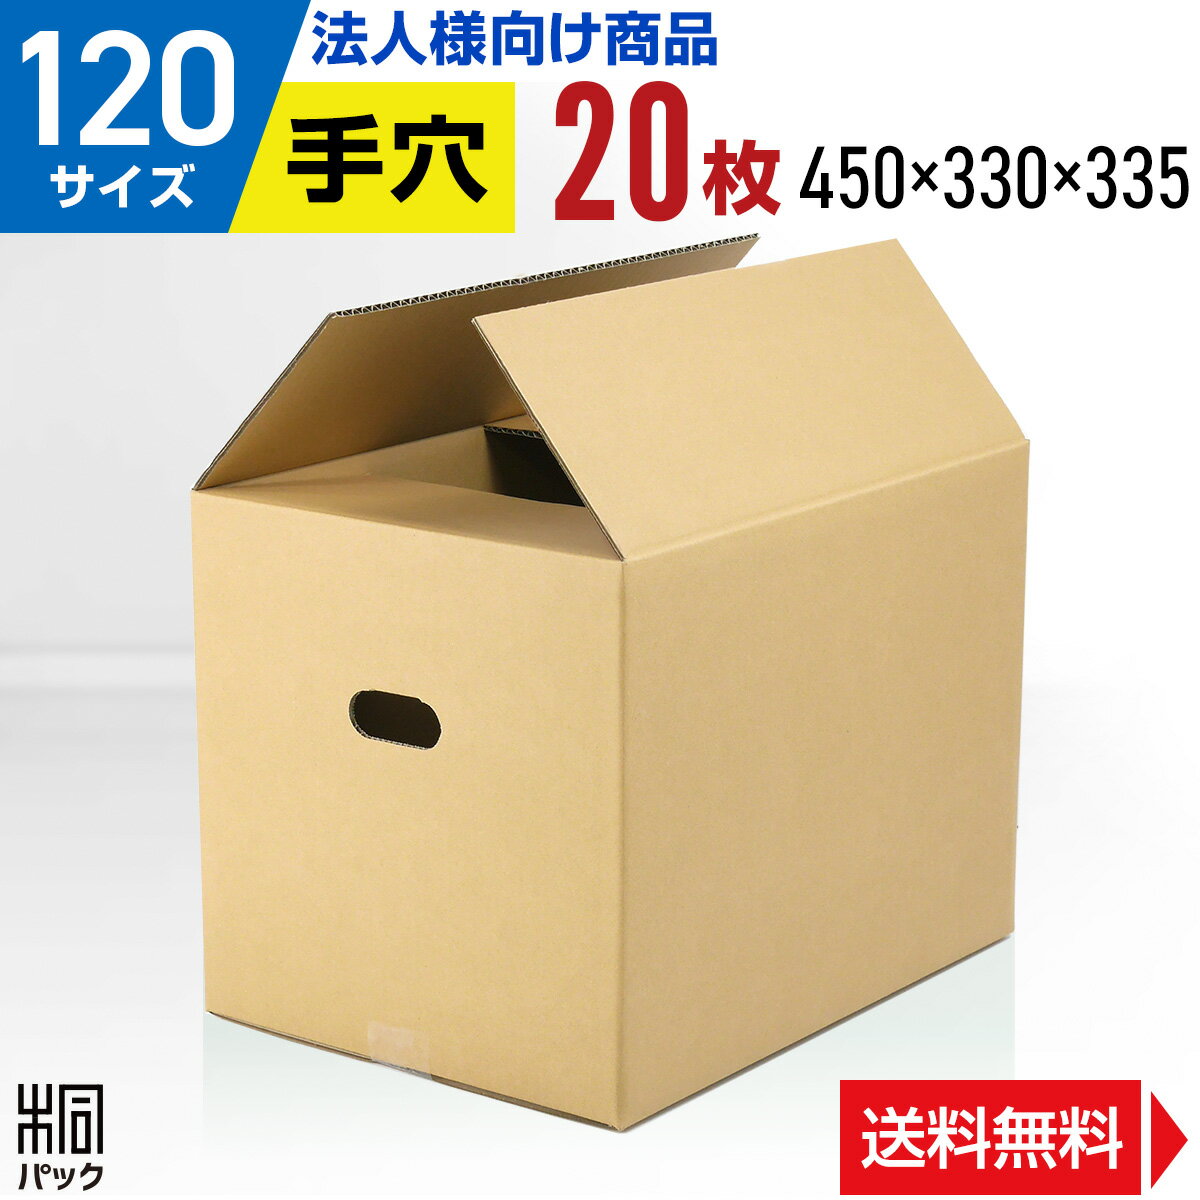 【法人特価】段ボール 箱 120サイズ 